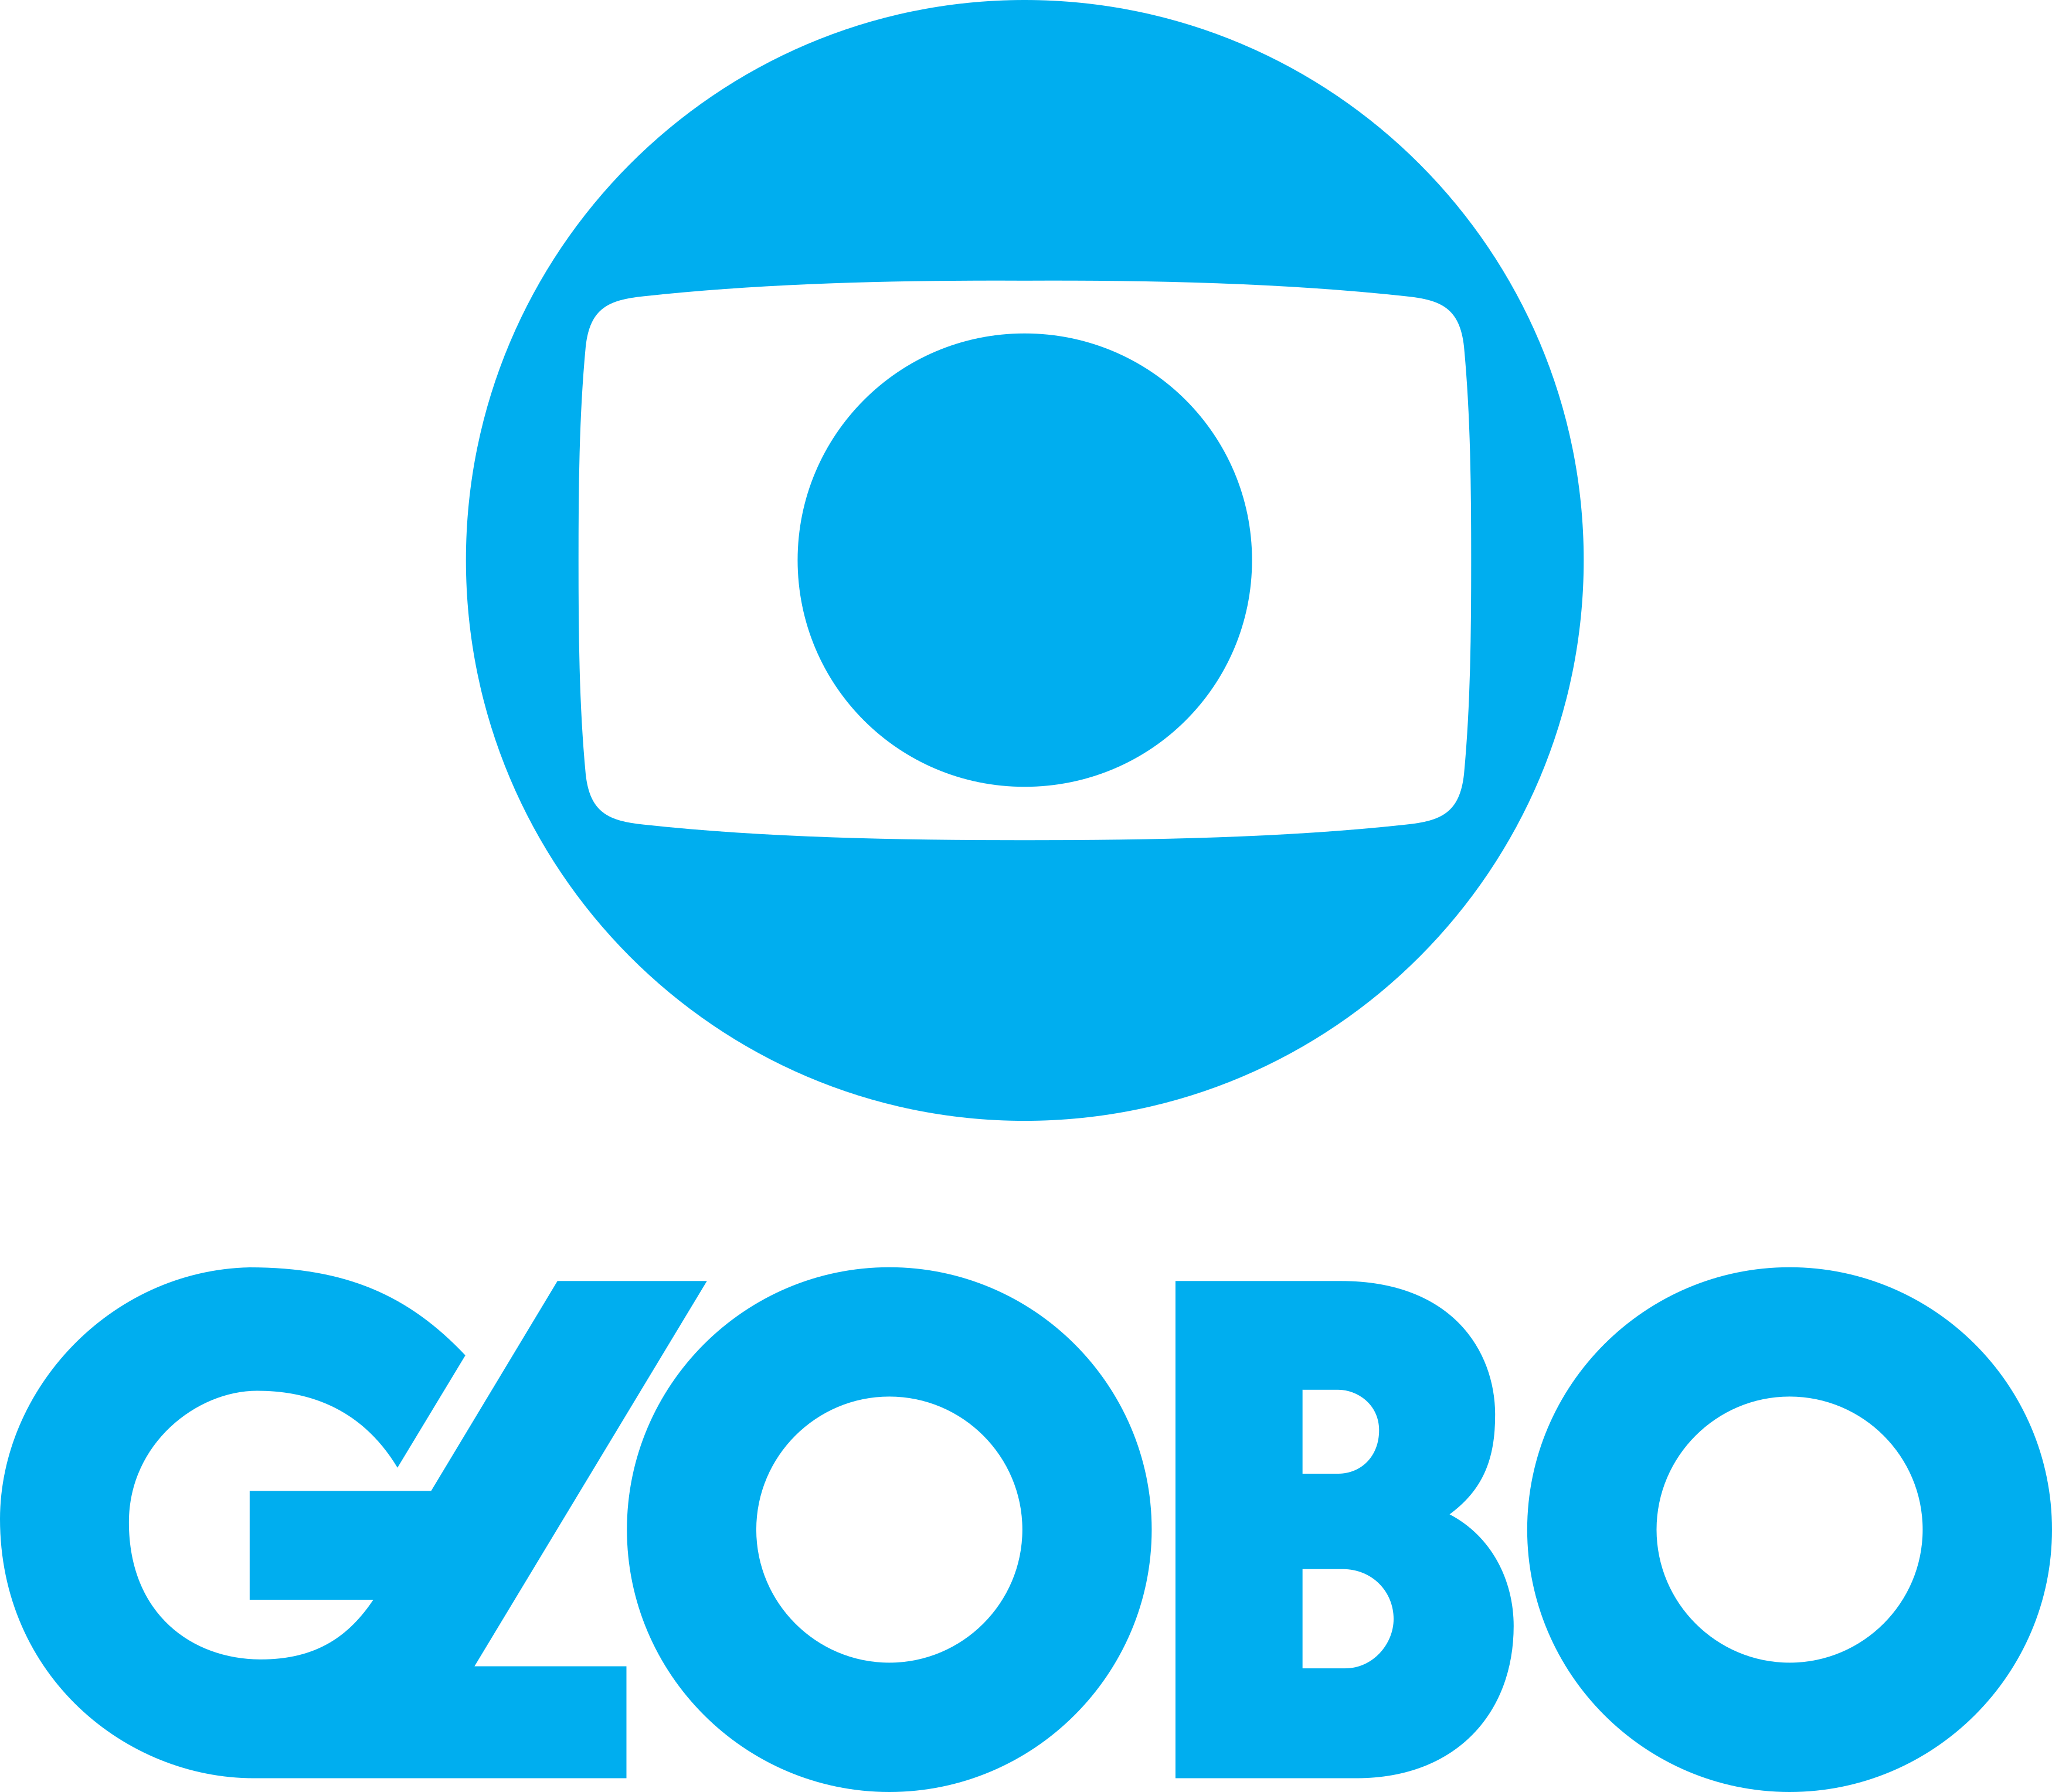 Rdde Globo TV logo.